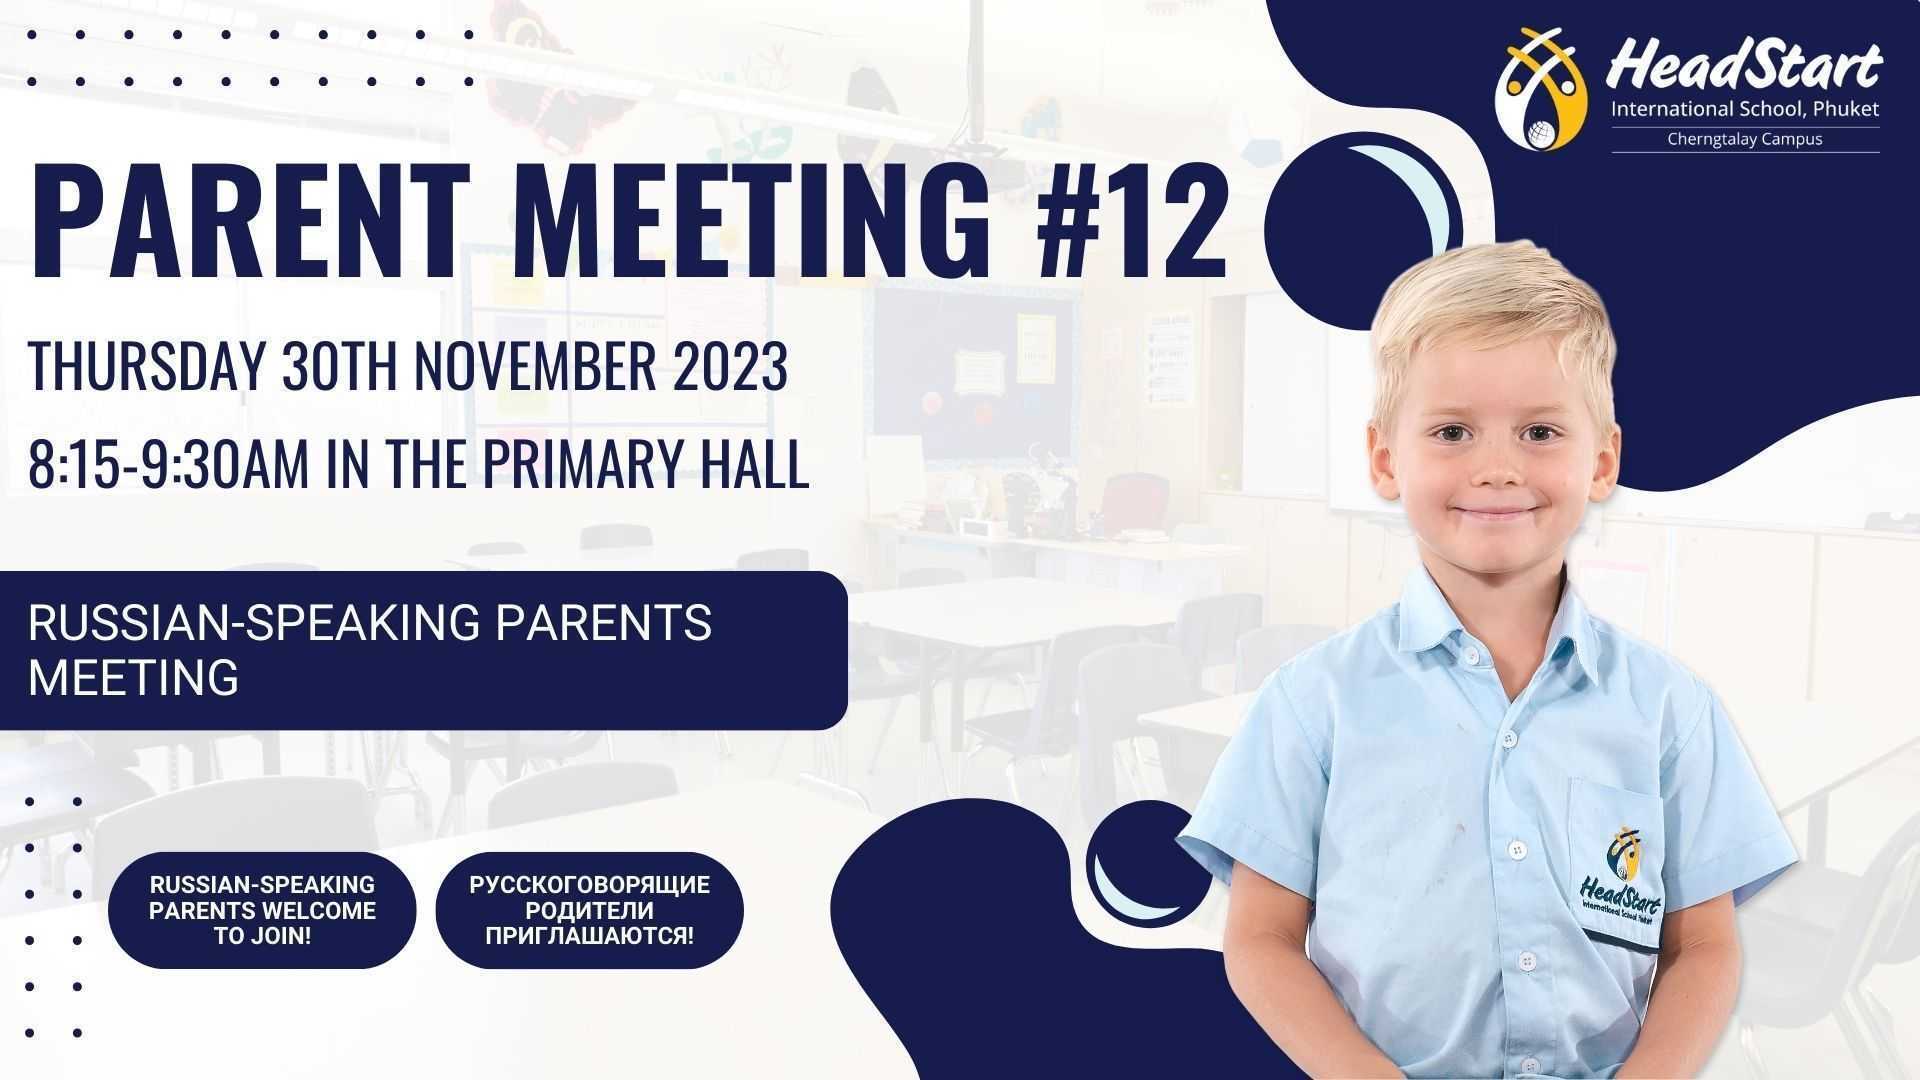 HSN Parent Meeting poster 012 Facebook 1280 x 720 px 